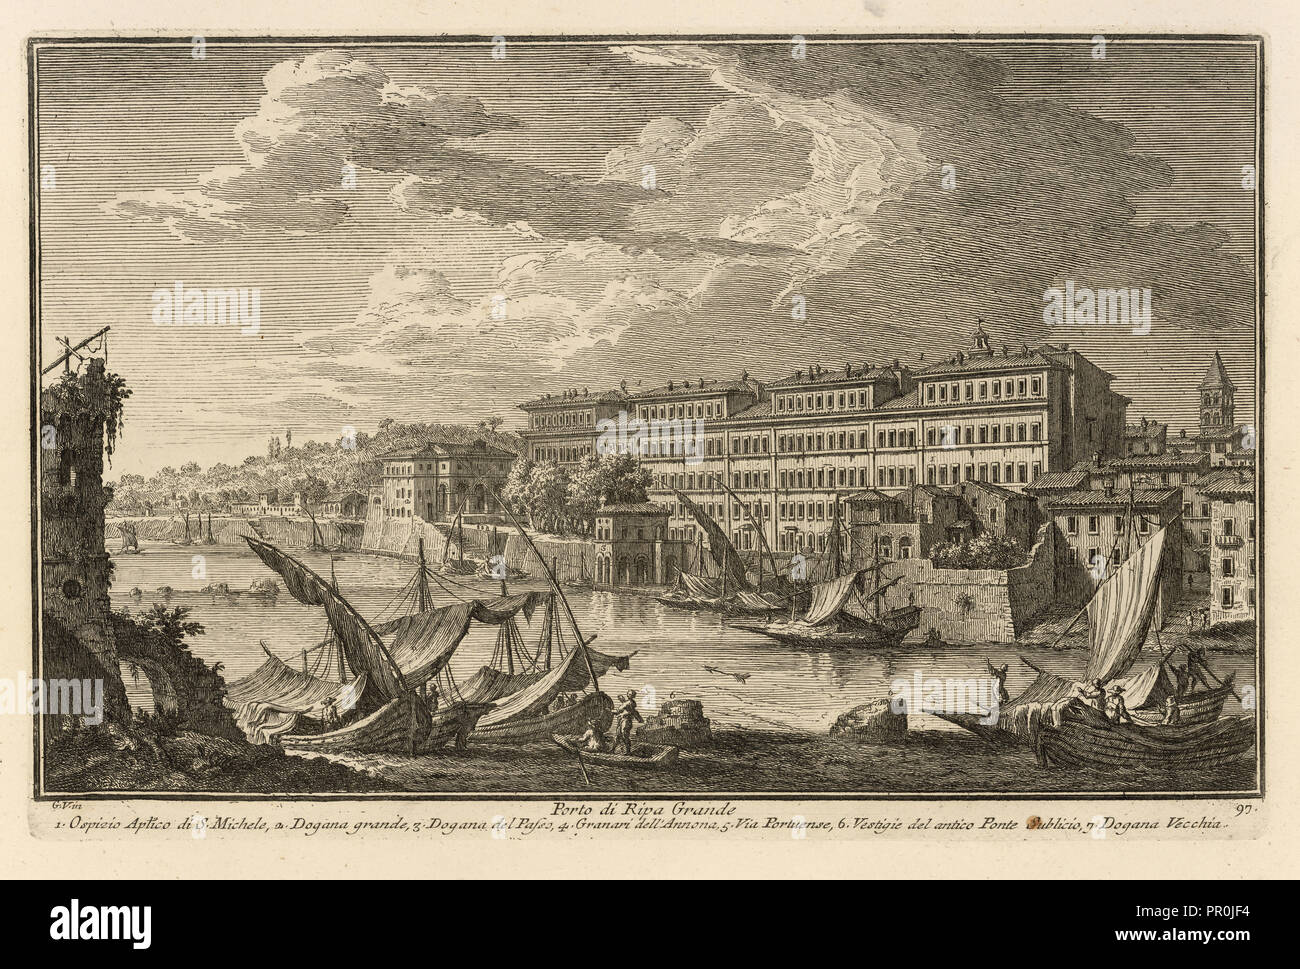 Porto di Ripa Grande, Delle magnificenze di Roma antica e moderna, Vasi, Giuseppe, 1710-1782, Engraving, 1747-1761, plate 97 Stock Photo